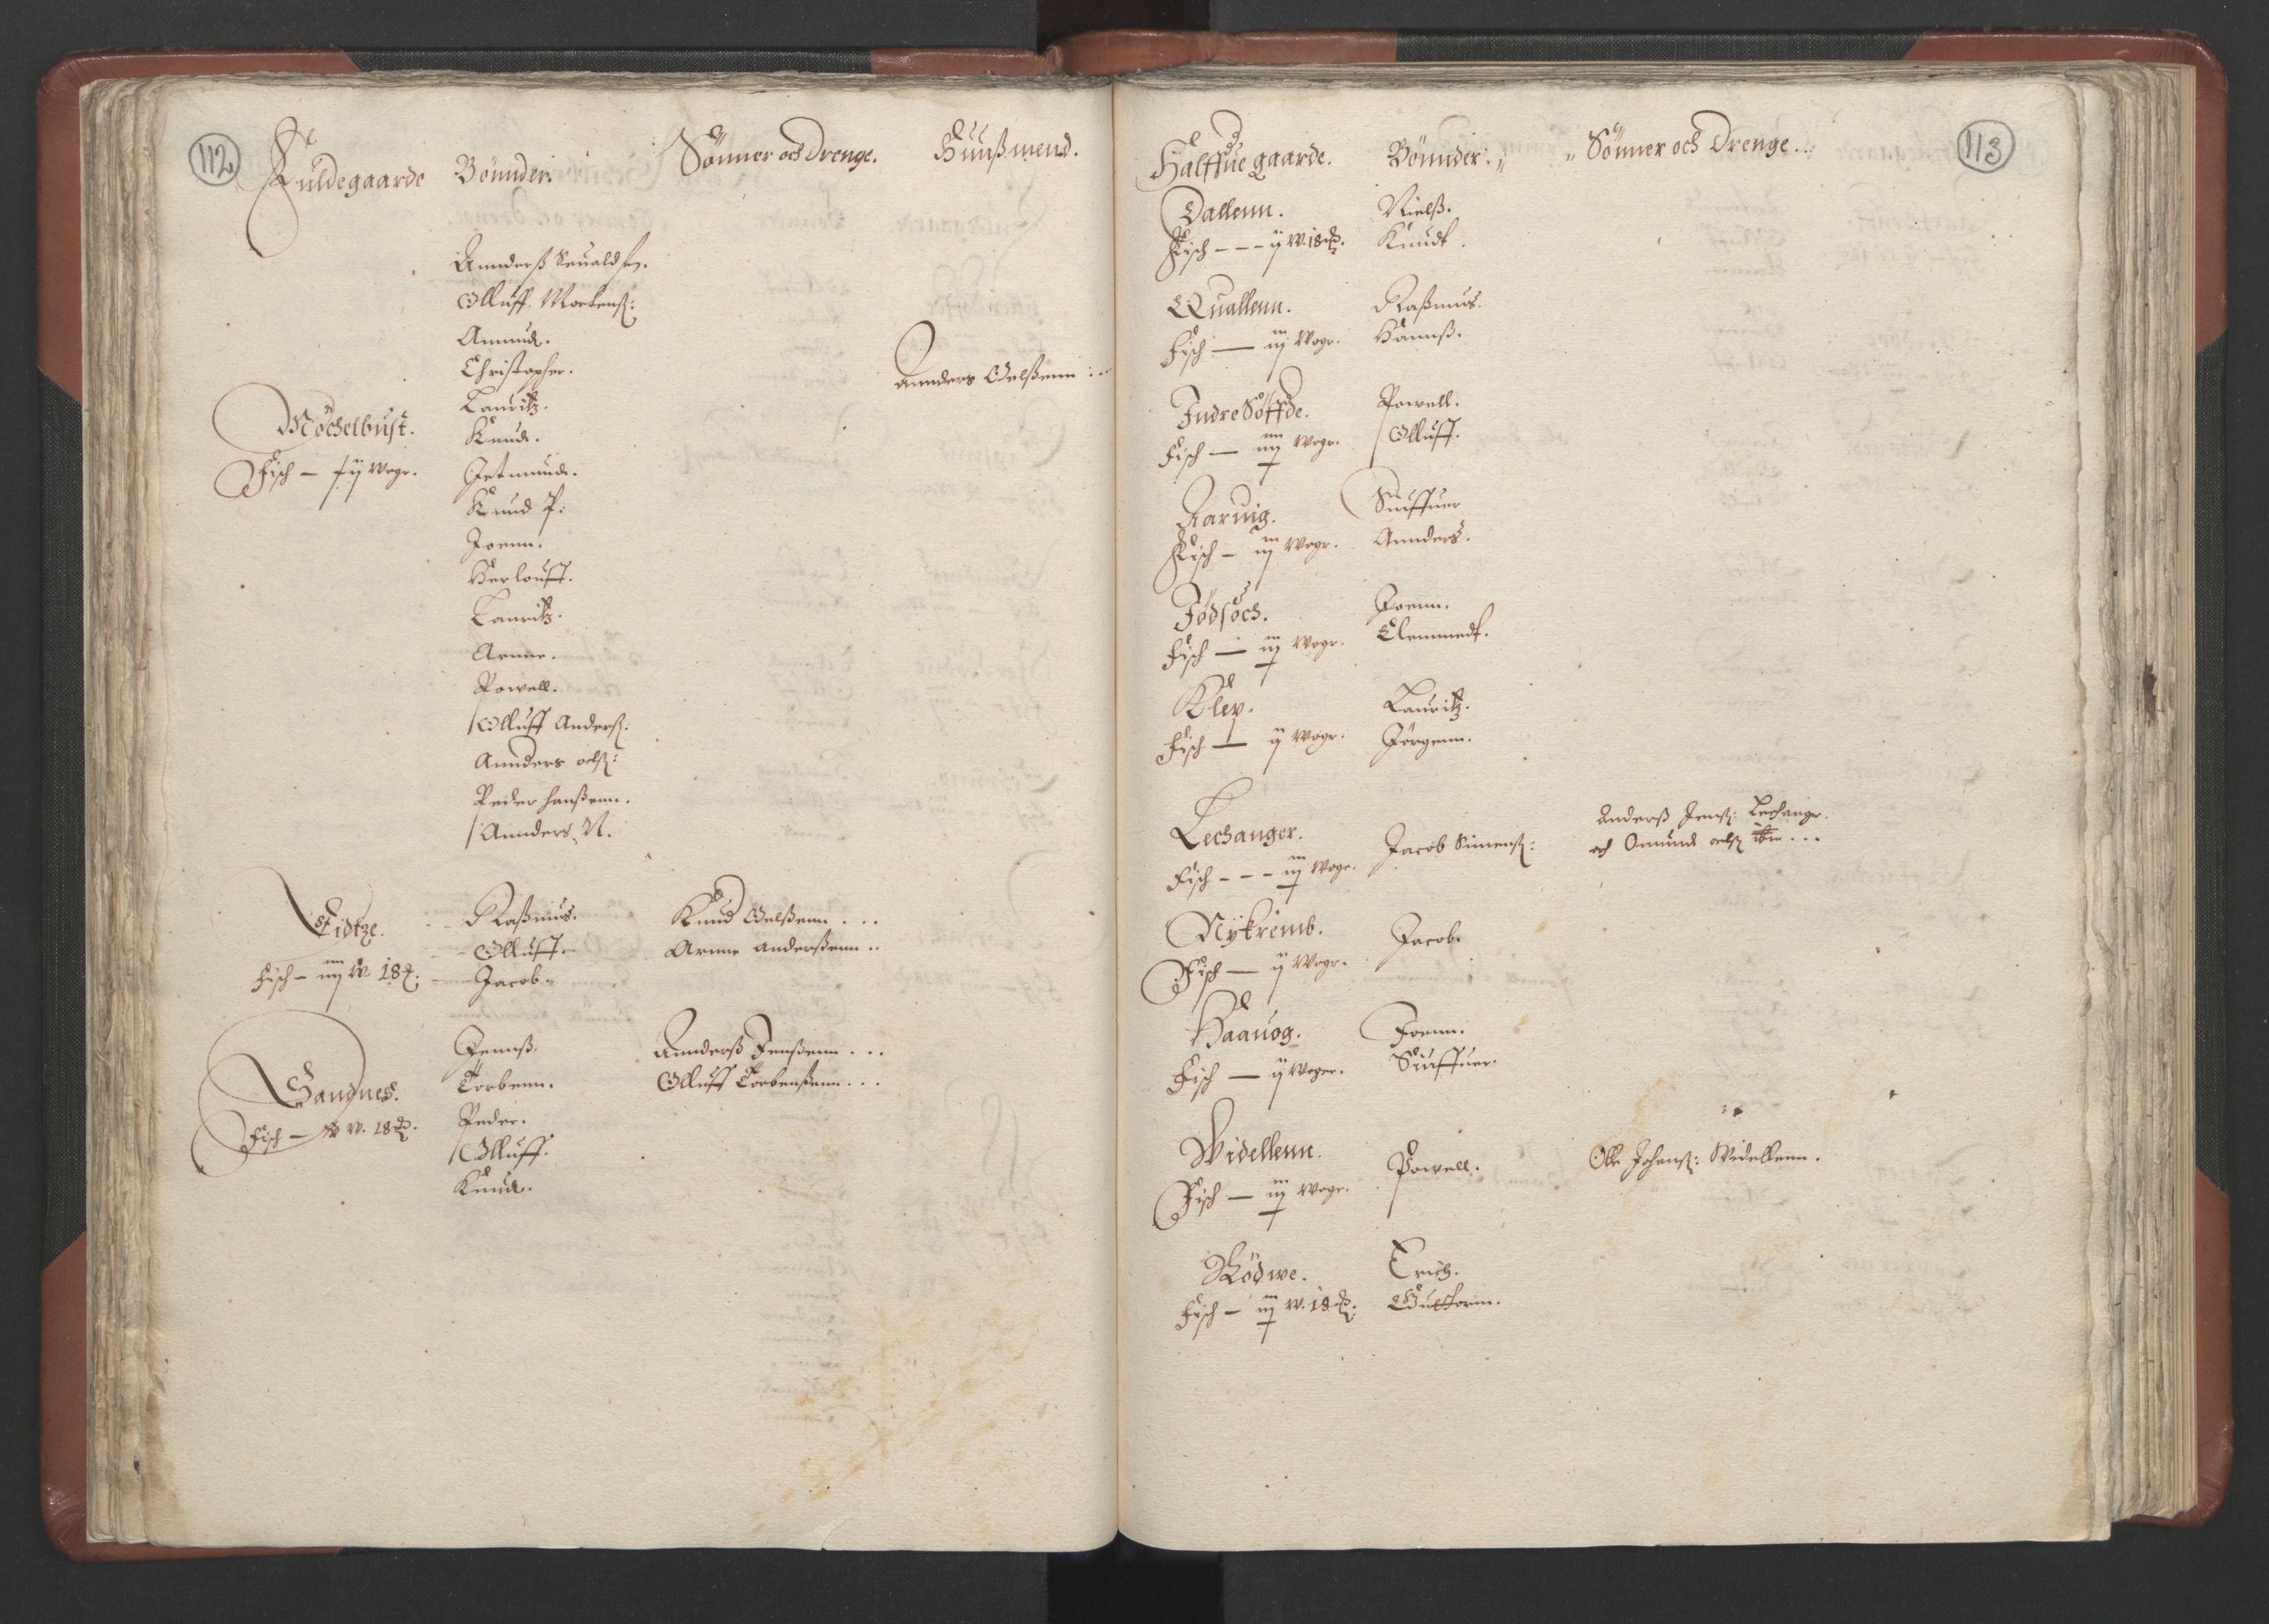 RA, Bailiff's Census 1664-1666, no. 16: Romsdal fogderi and Sunnmøre fogderi, 1664-1665, p. 112-113